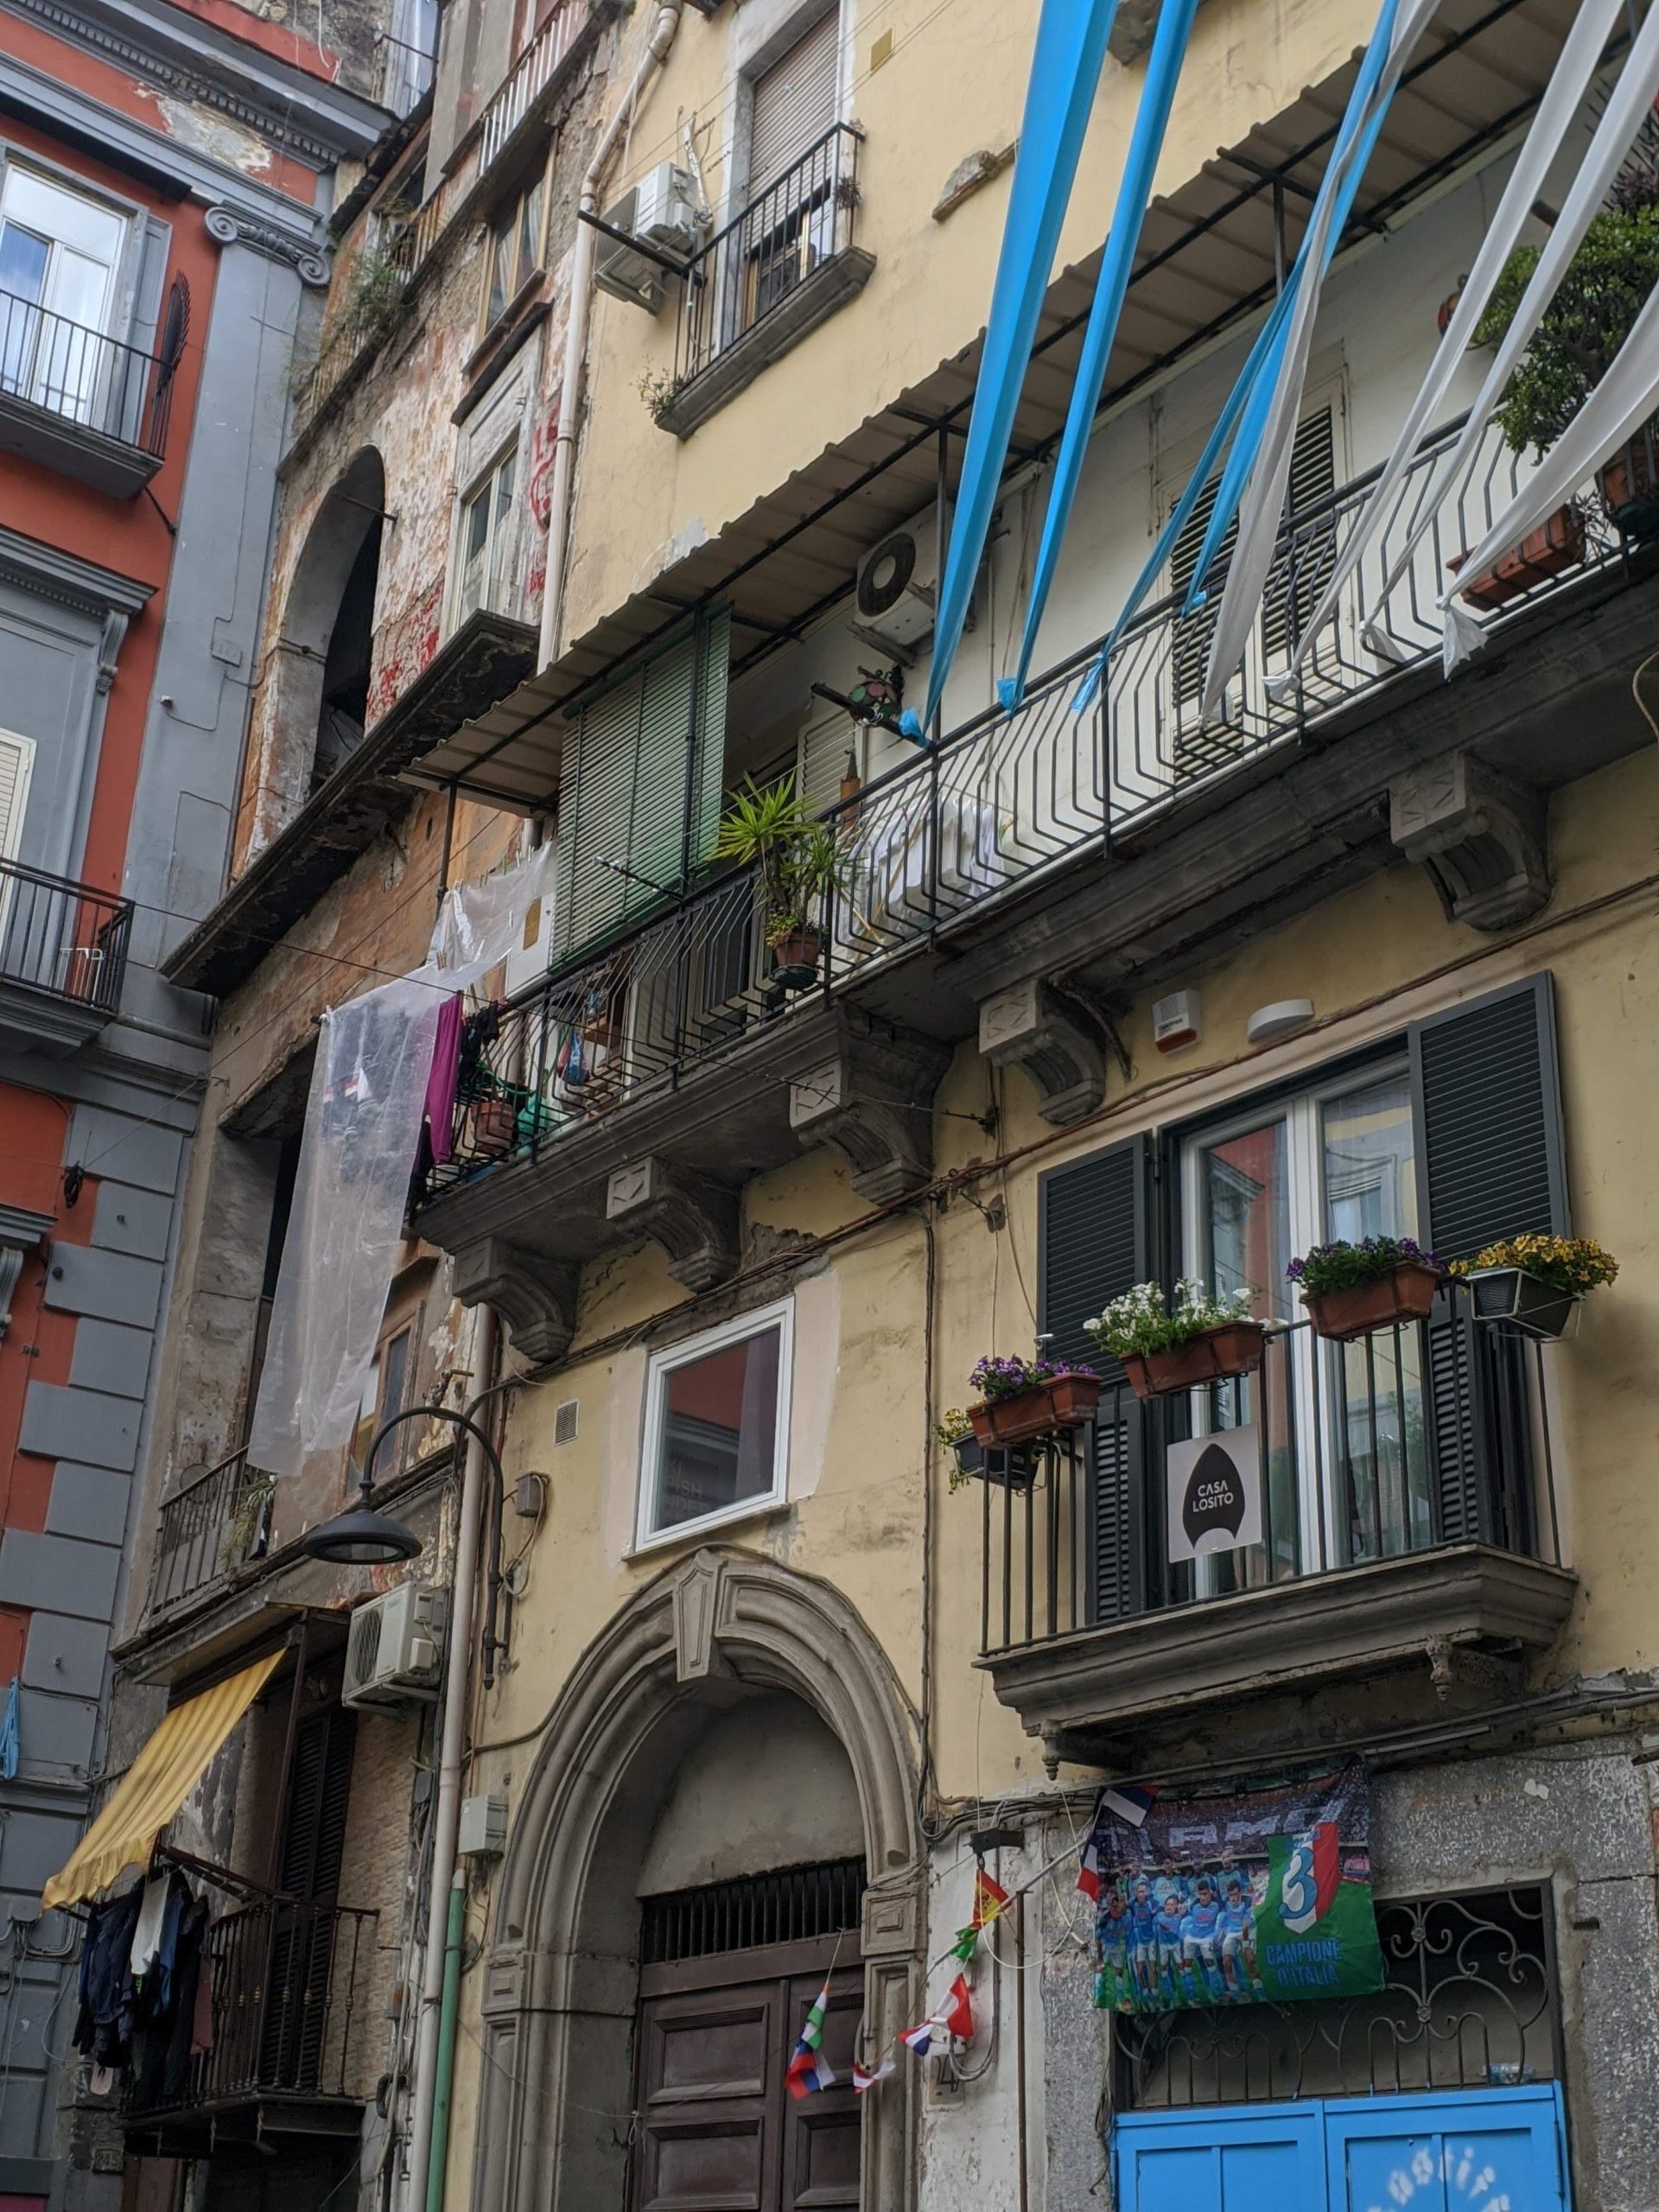 Foto da fachada de um prédio em Nápoles, o edifício é no tom amarelado e possui vários elementos, como janelas adornadas com plantas , uma porta contornada por um pórtico de pedra, faixas azuis e brancas que remetem ao time da cidade e roupas penduradas nas janelas.